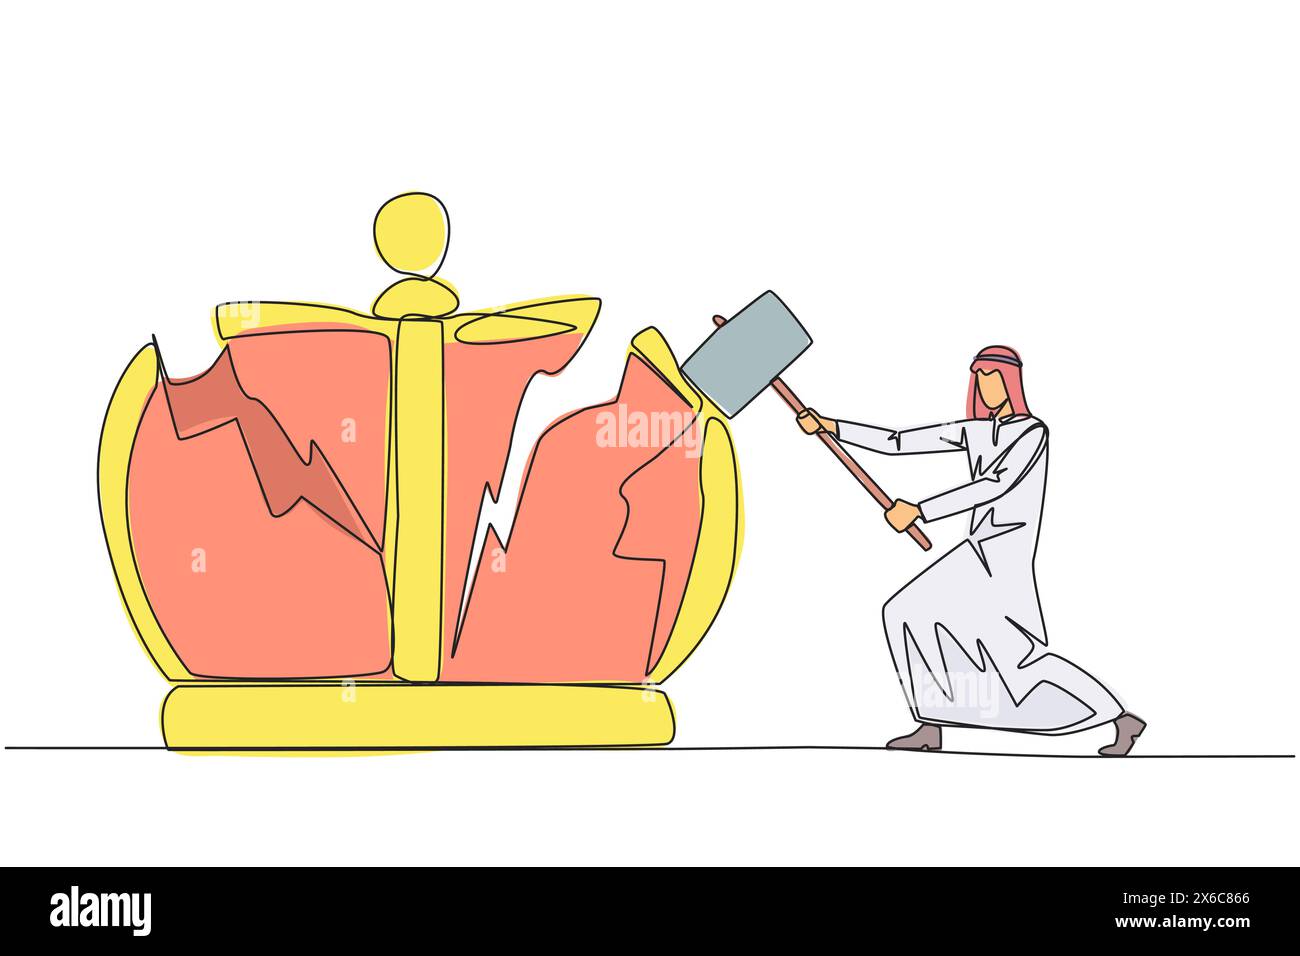 Simple ligne continue dessinant homme d'affaires arabe se préparant à frapper la grande couronne. Détruire les symboles du Royaume autoritaire. Attendez-vous à la justice pour le bus Illustration de Vecteur